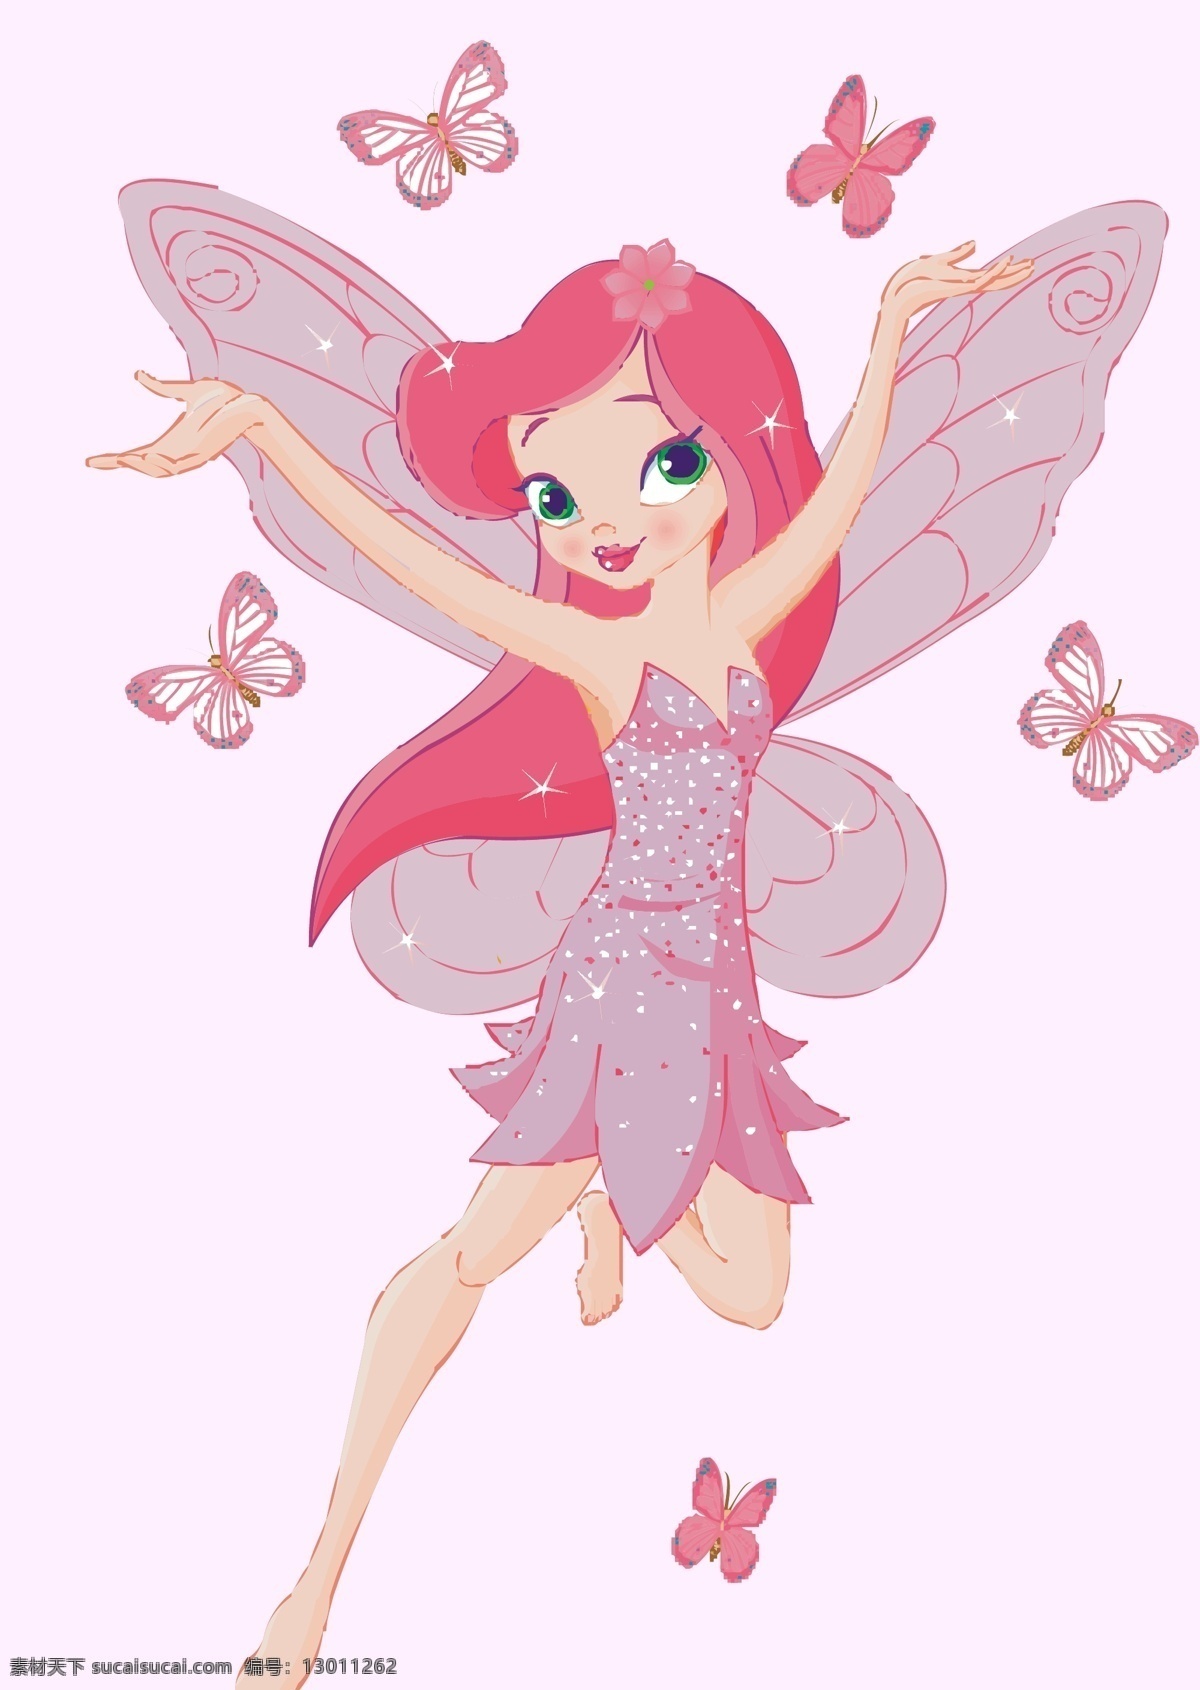 精灵公主 卡通天使 天使卡通图案 花仙子卡通 会飞的天使 带翅膀的精灵 卡通 卡通设计